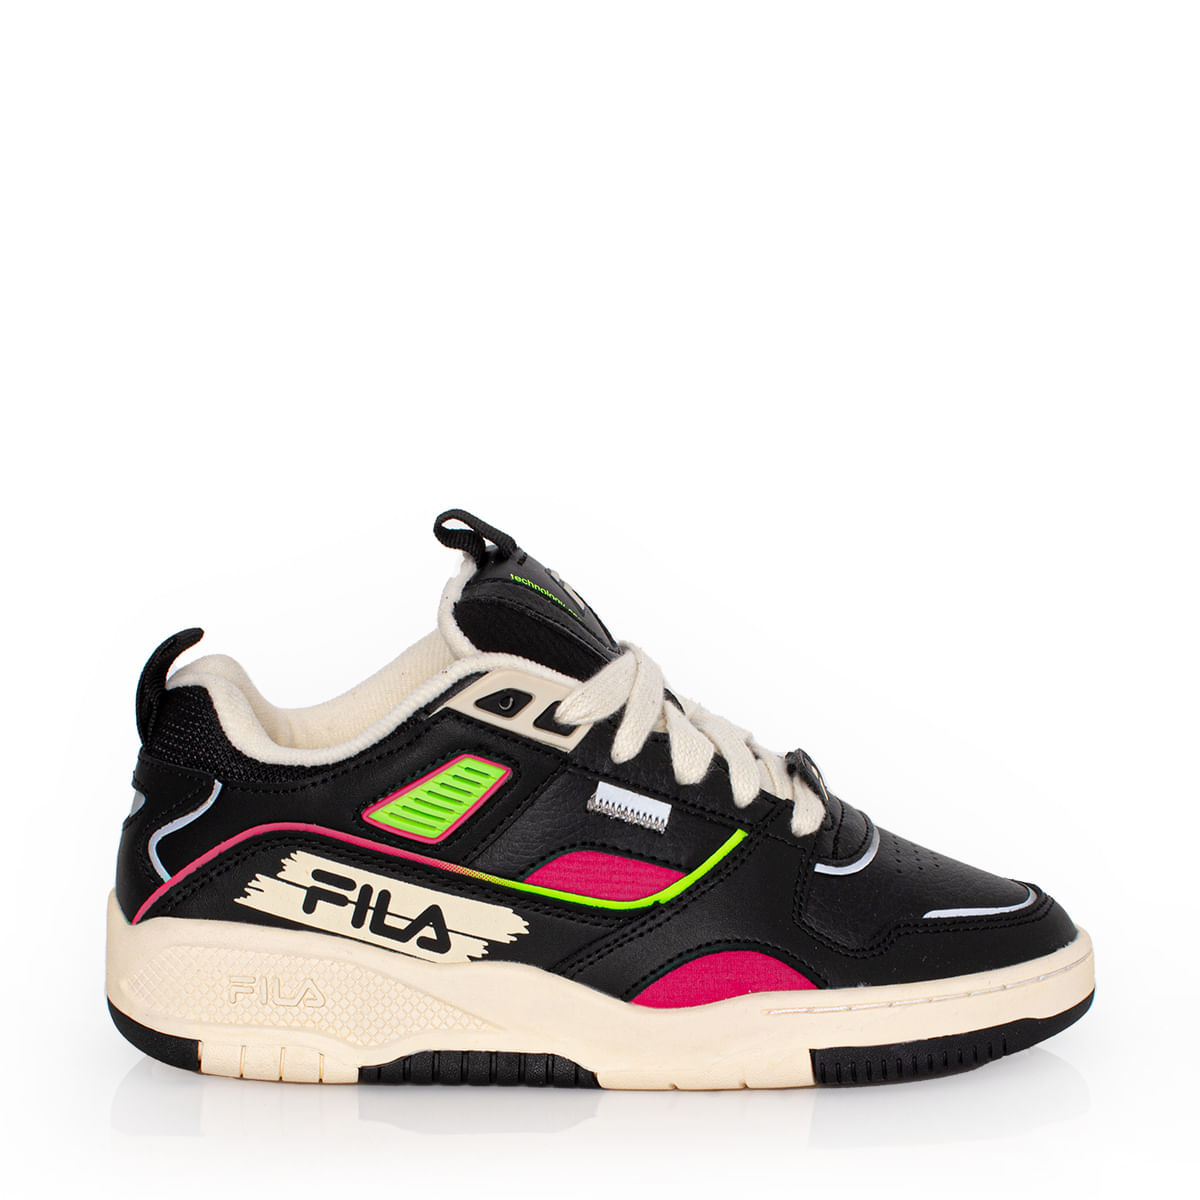 Tênis Fila FX-33 High 1146743 - Menina Shoes